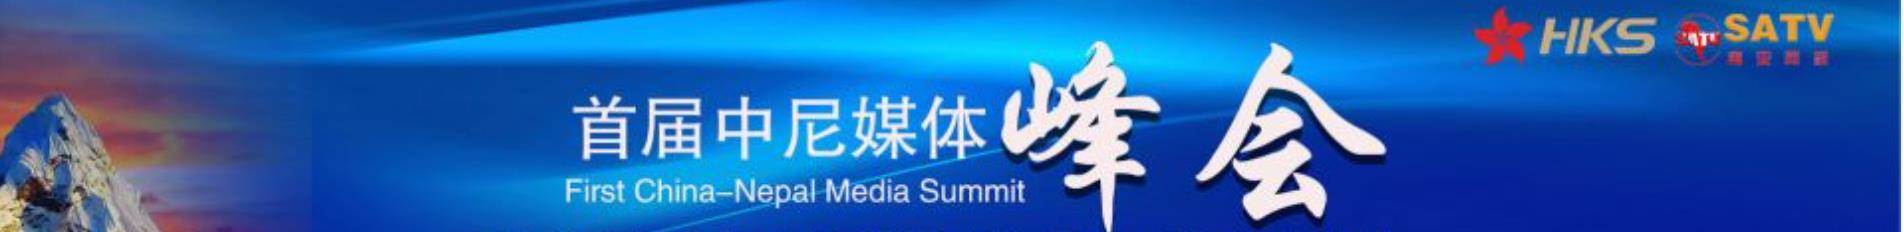 首届中尼媒体峰会专题